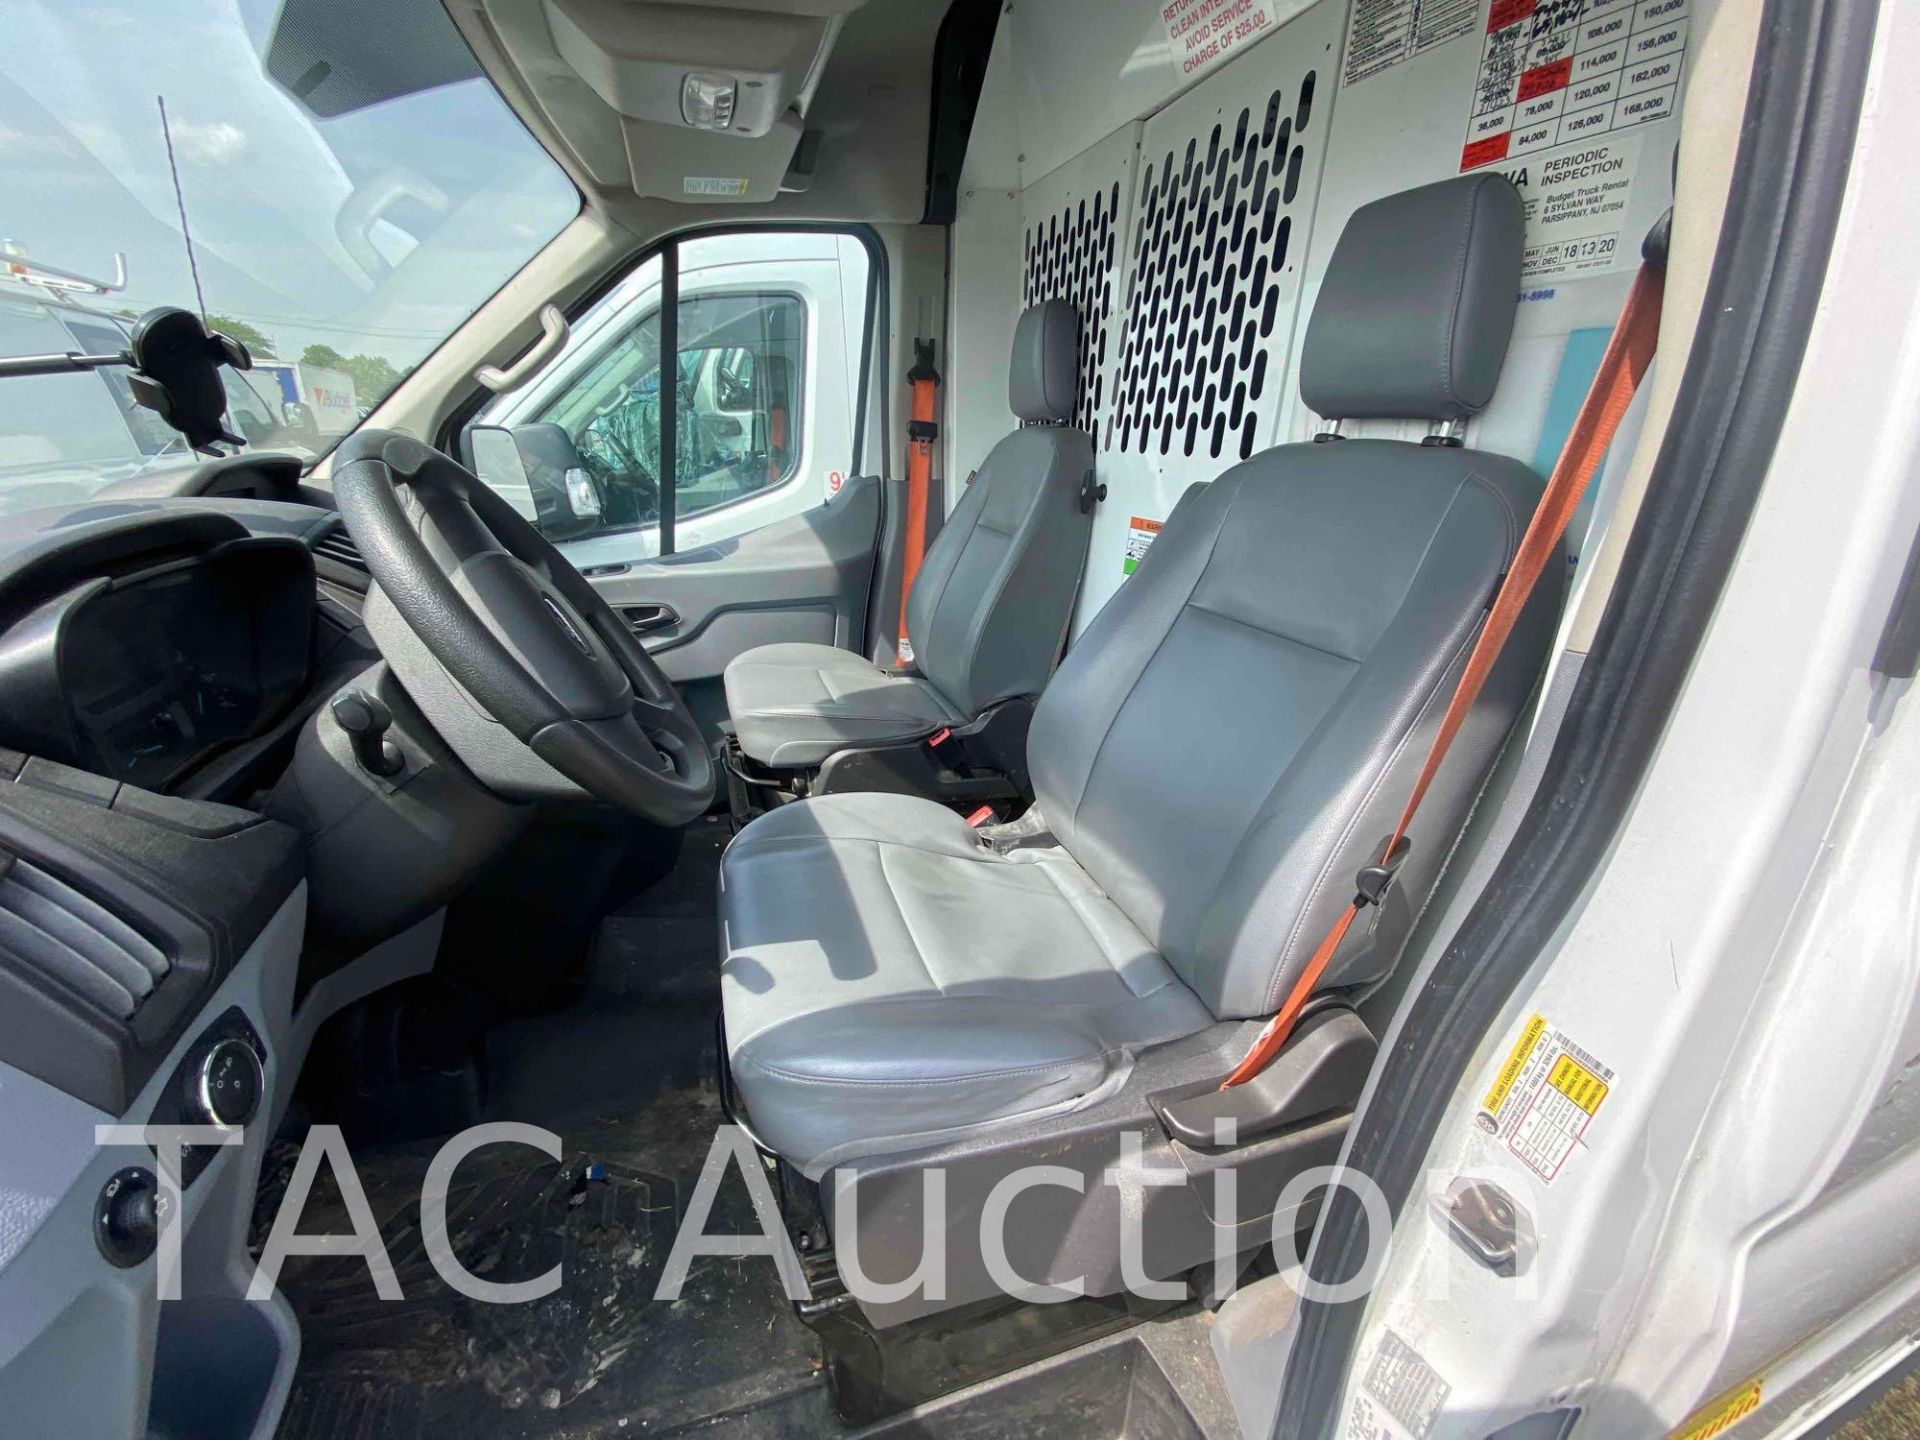 2019 Ford Transit 150 Cargo Van - Image 28 of 50